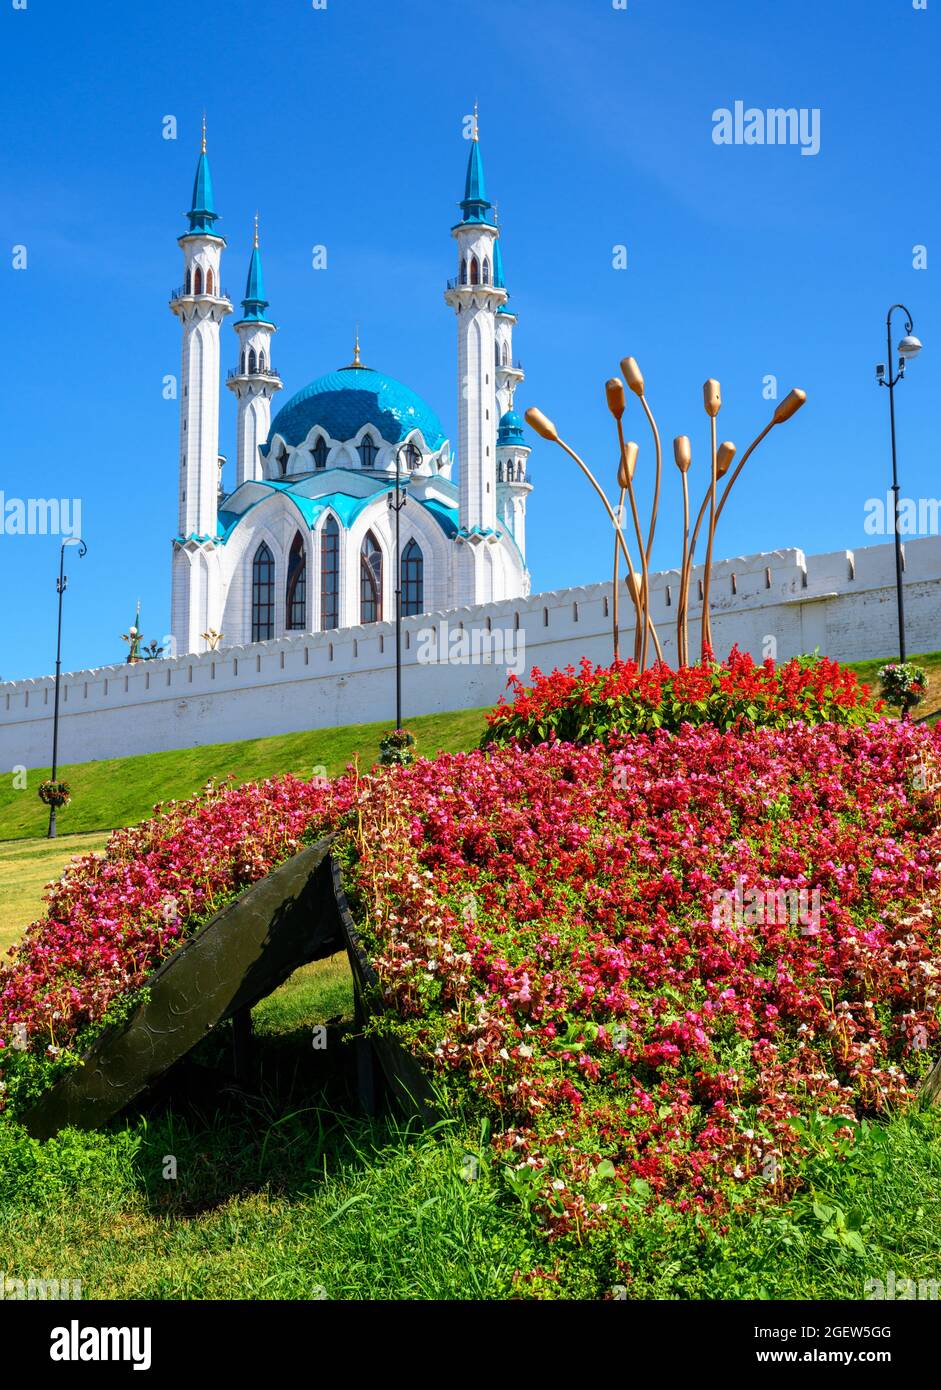 Le Kremlin de Kazan en été, Tatarstan, Russie. Belle vue panoramique de la mosquée de Kul Sharif, grand point de repère de Kazan. Célèbre attraction touristique, ar islamique Banque D'Images